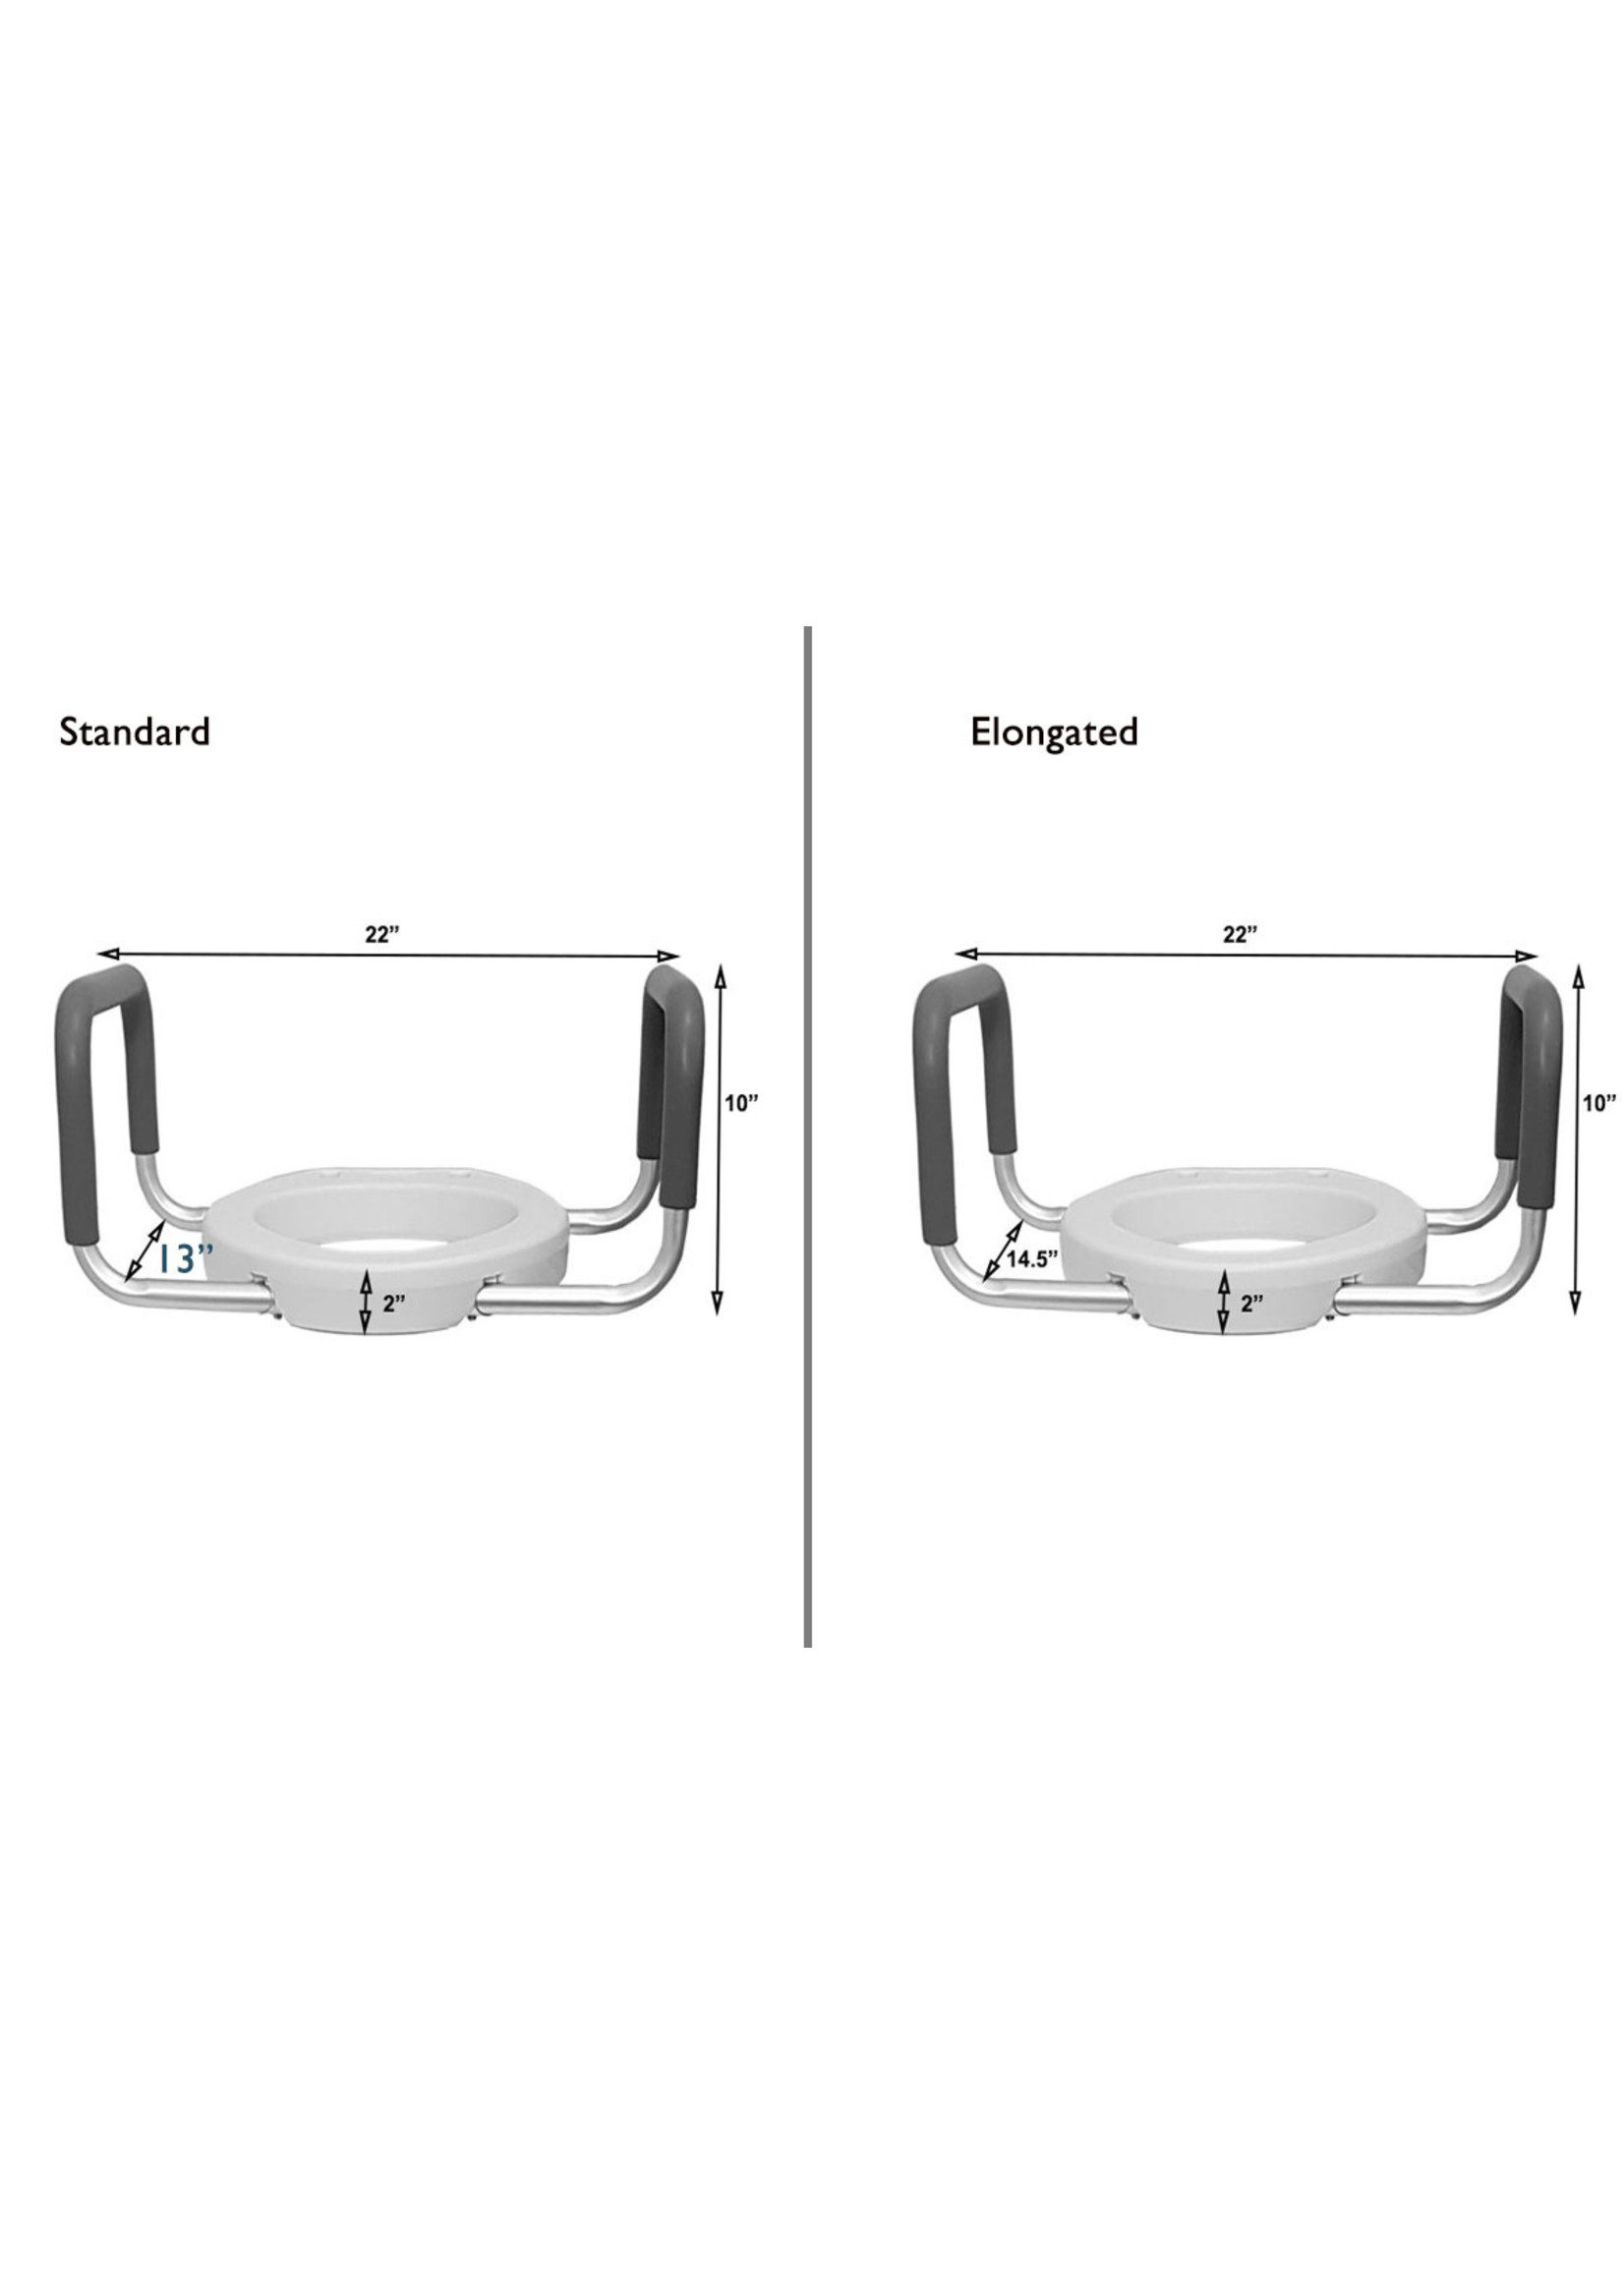 MOBB Siège de toilette surélevé de 2 po avec accoudoirs - Standard